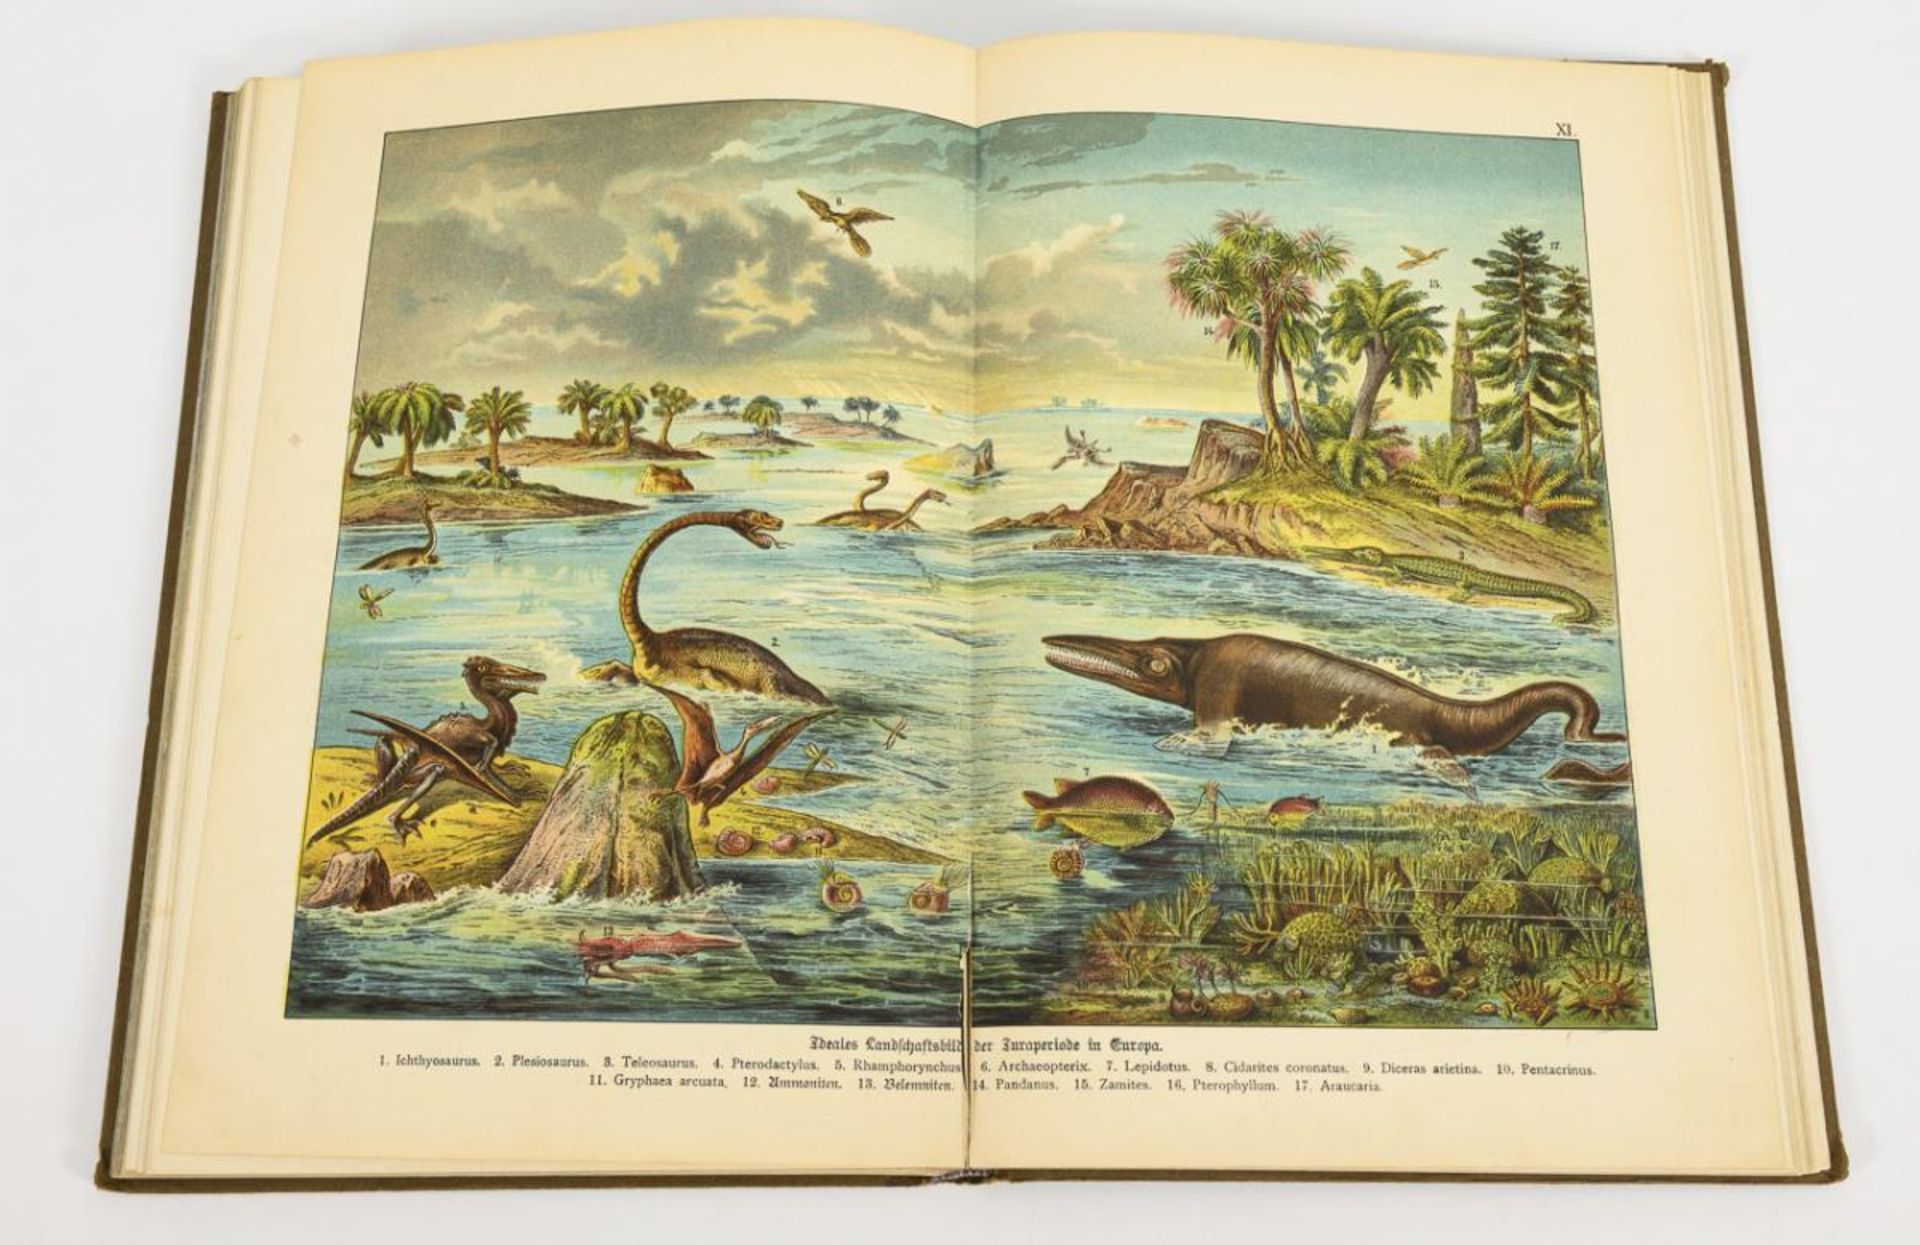 SCHUBERT, G.H. von. "Naturgeschichte Geologie, Mineralreich, Paläontologie". - Image 2 of 4